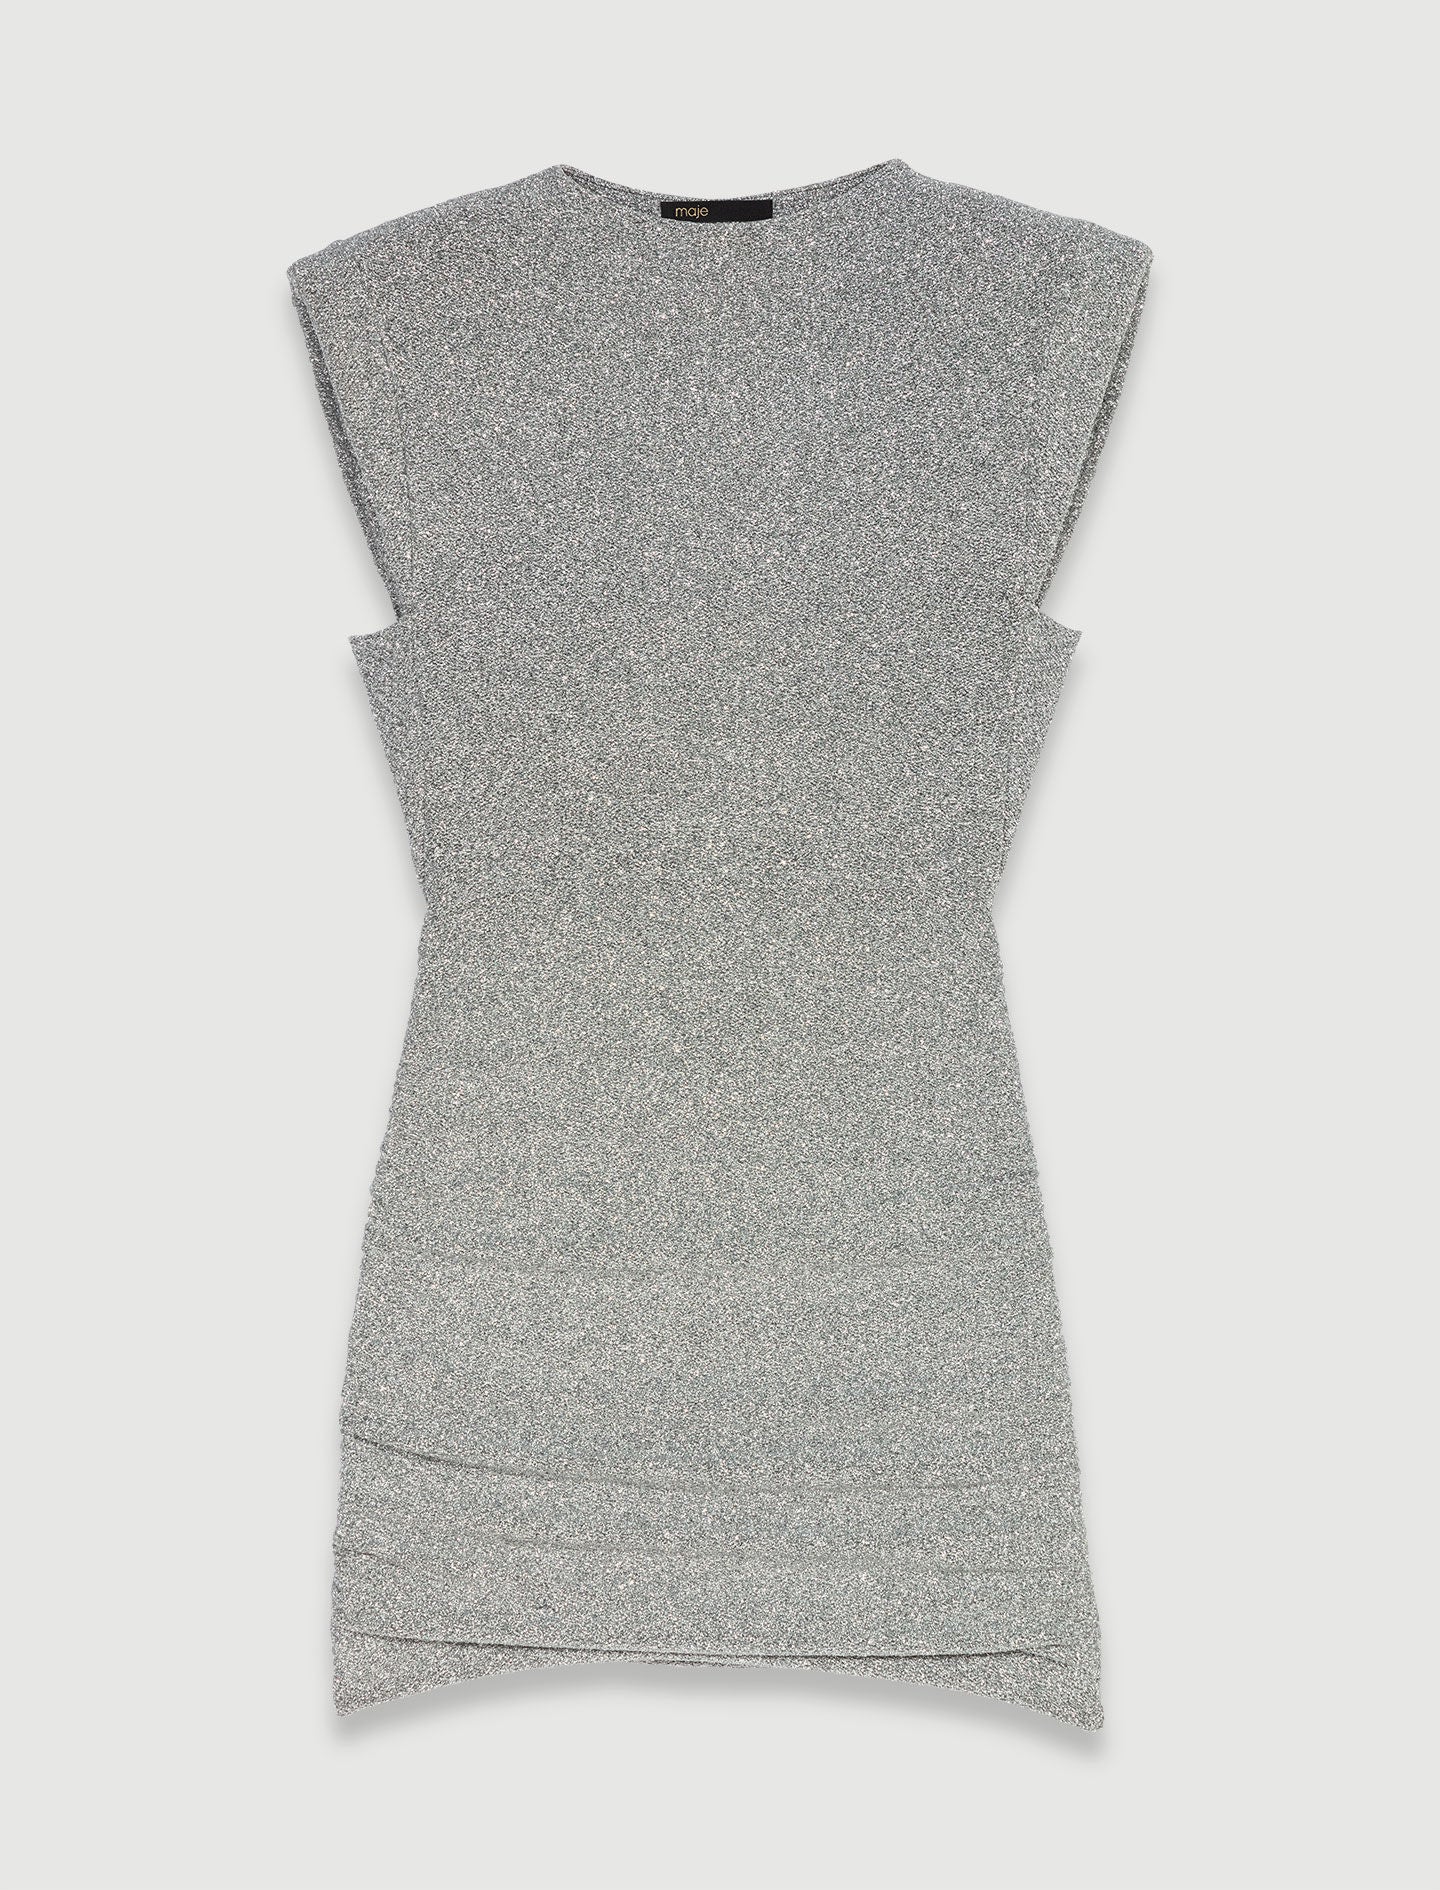 Silver shiny knit short dress